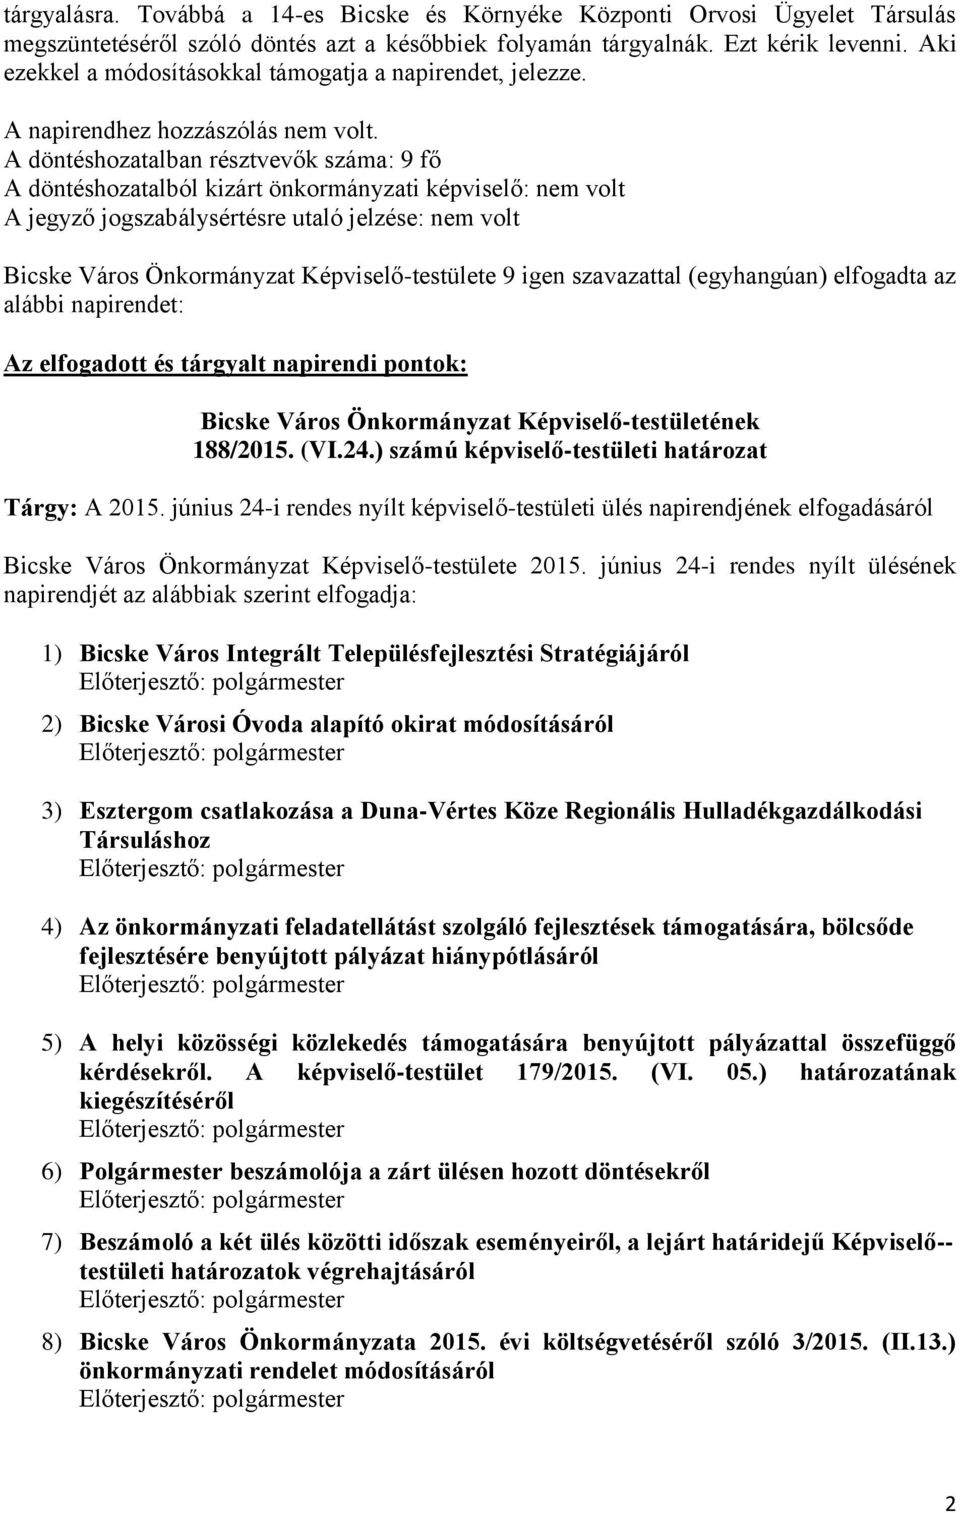 A döntéshozatalban résztvevők száma: 9 fő Bicske Város Önkormányzat Képviselő-testülete 9 igen szavazattal (egyhangúan) elfogadta az alábbi napirendet: Az elfogadott és tárgyalt napirendi pontok: